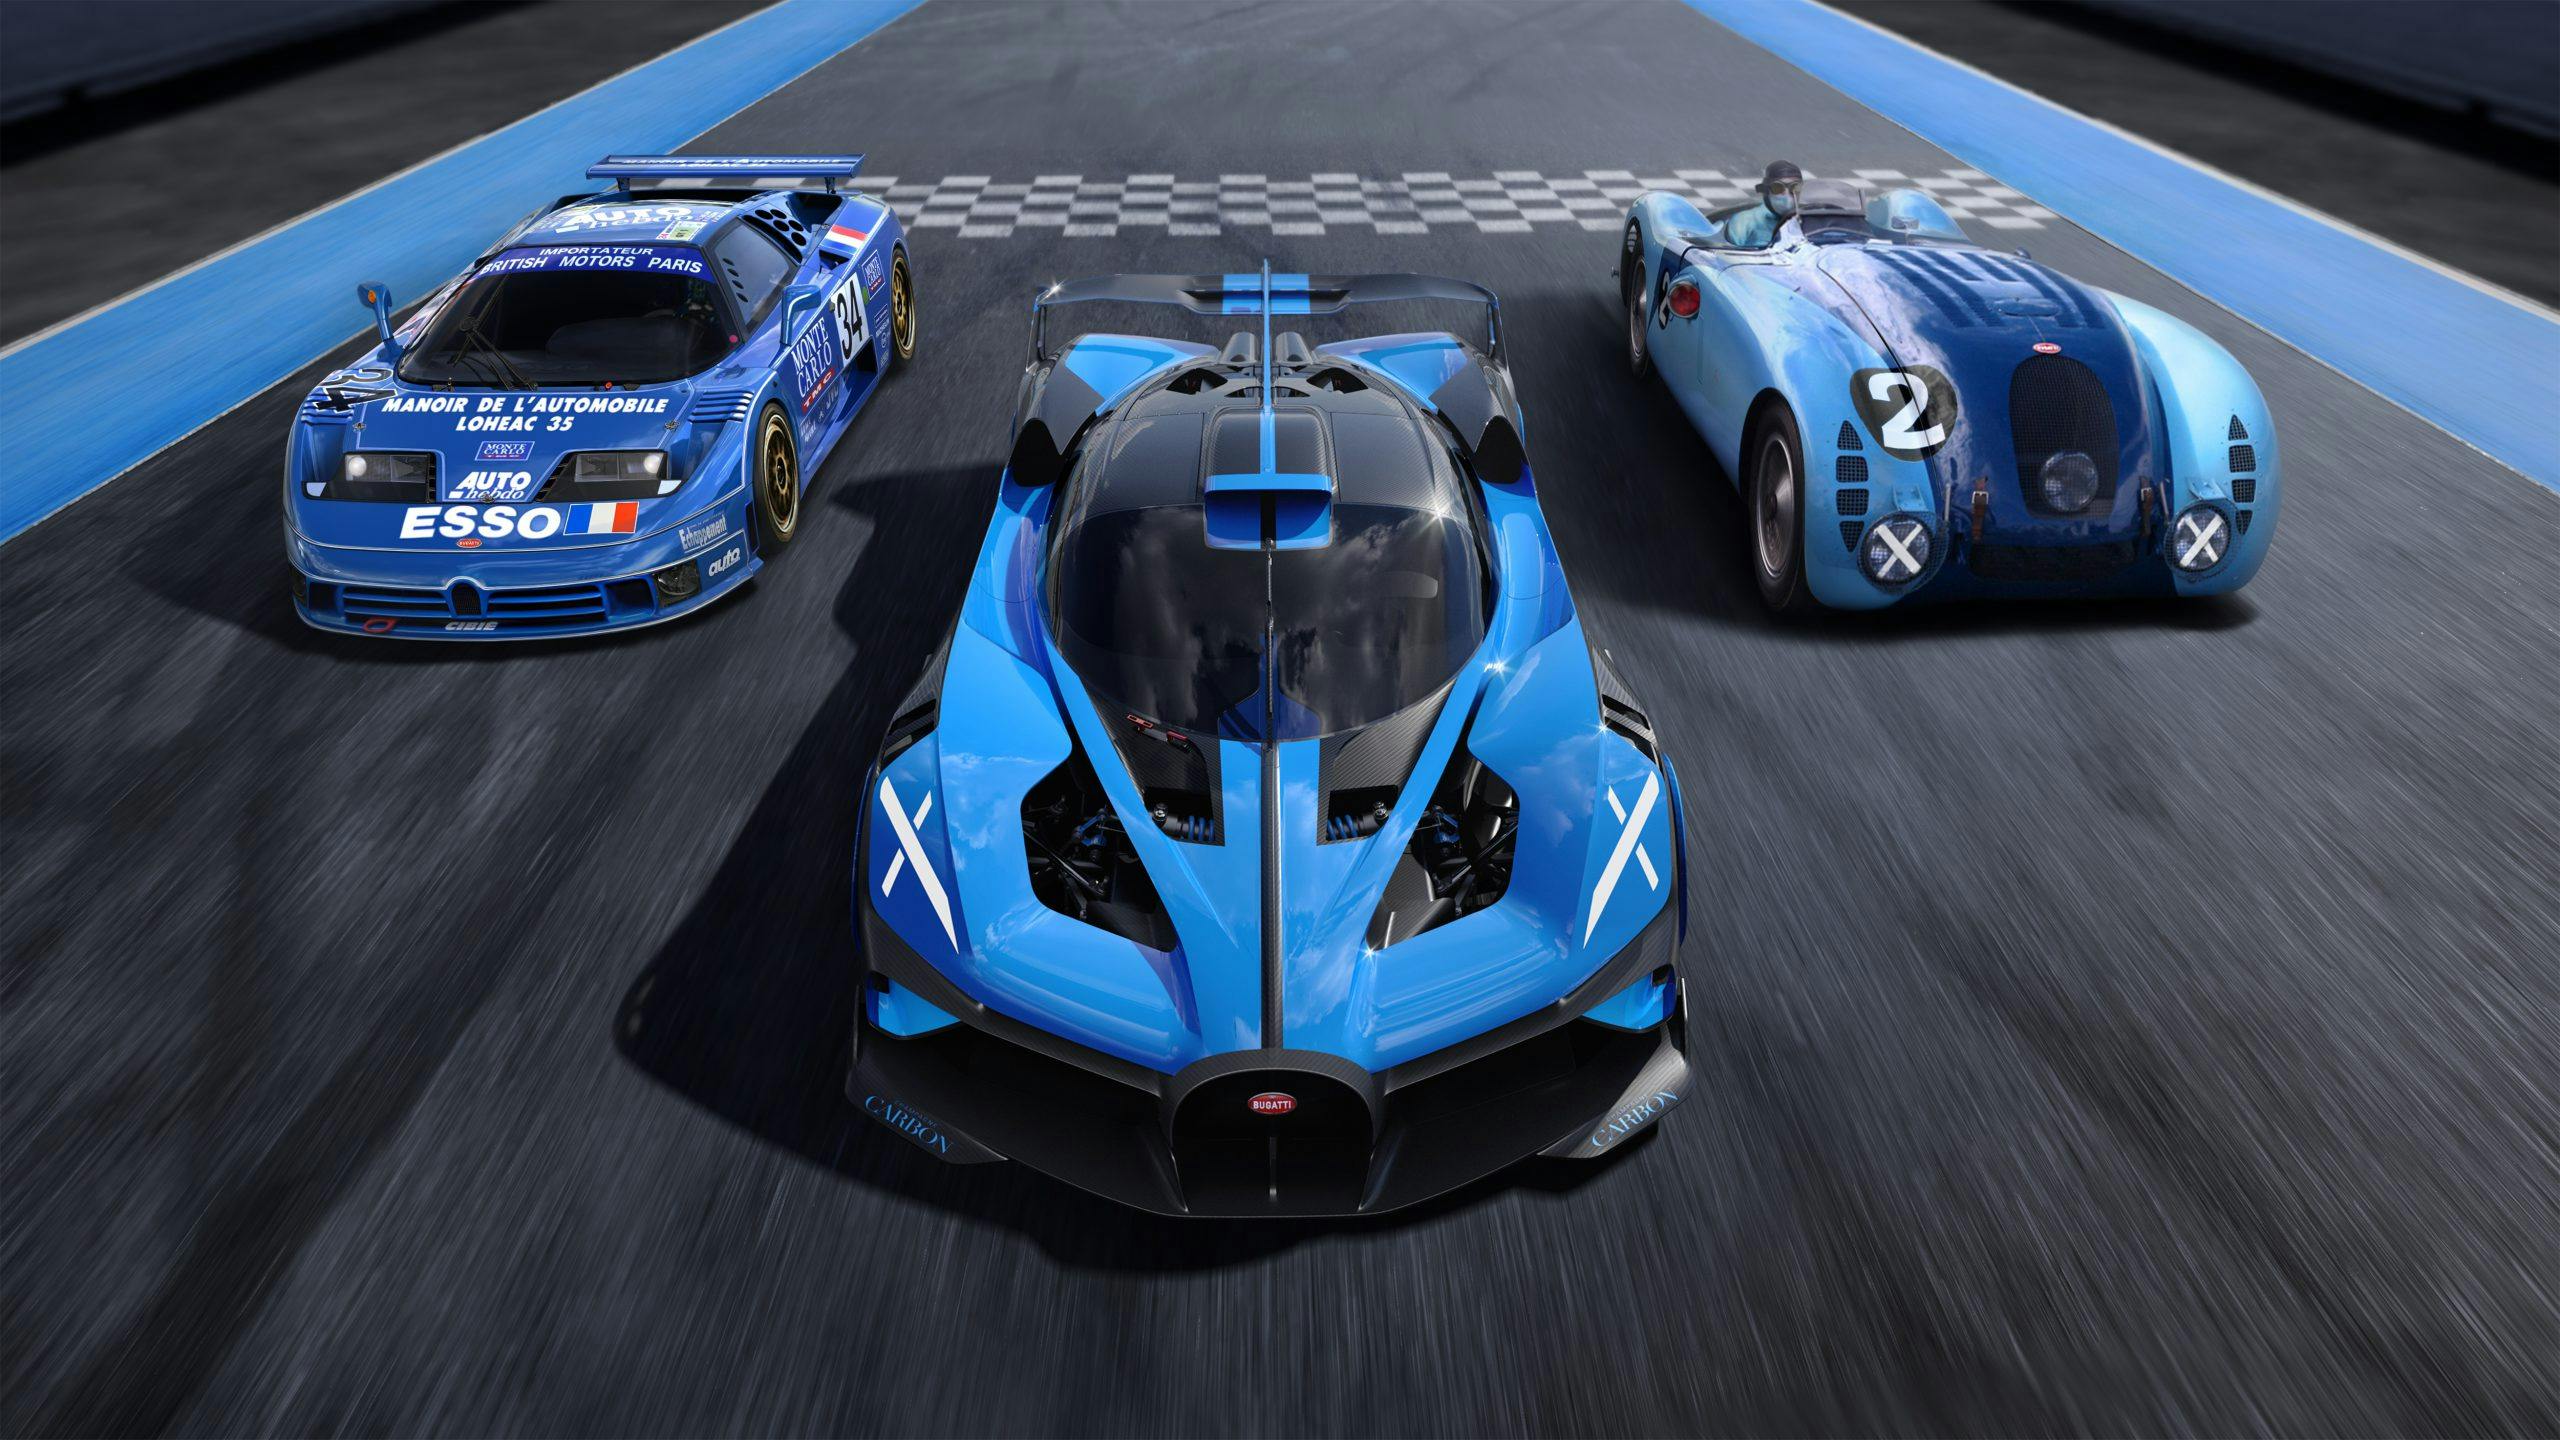 Bugatti bolide front on track